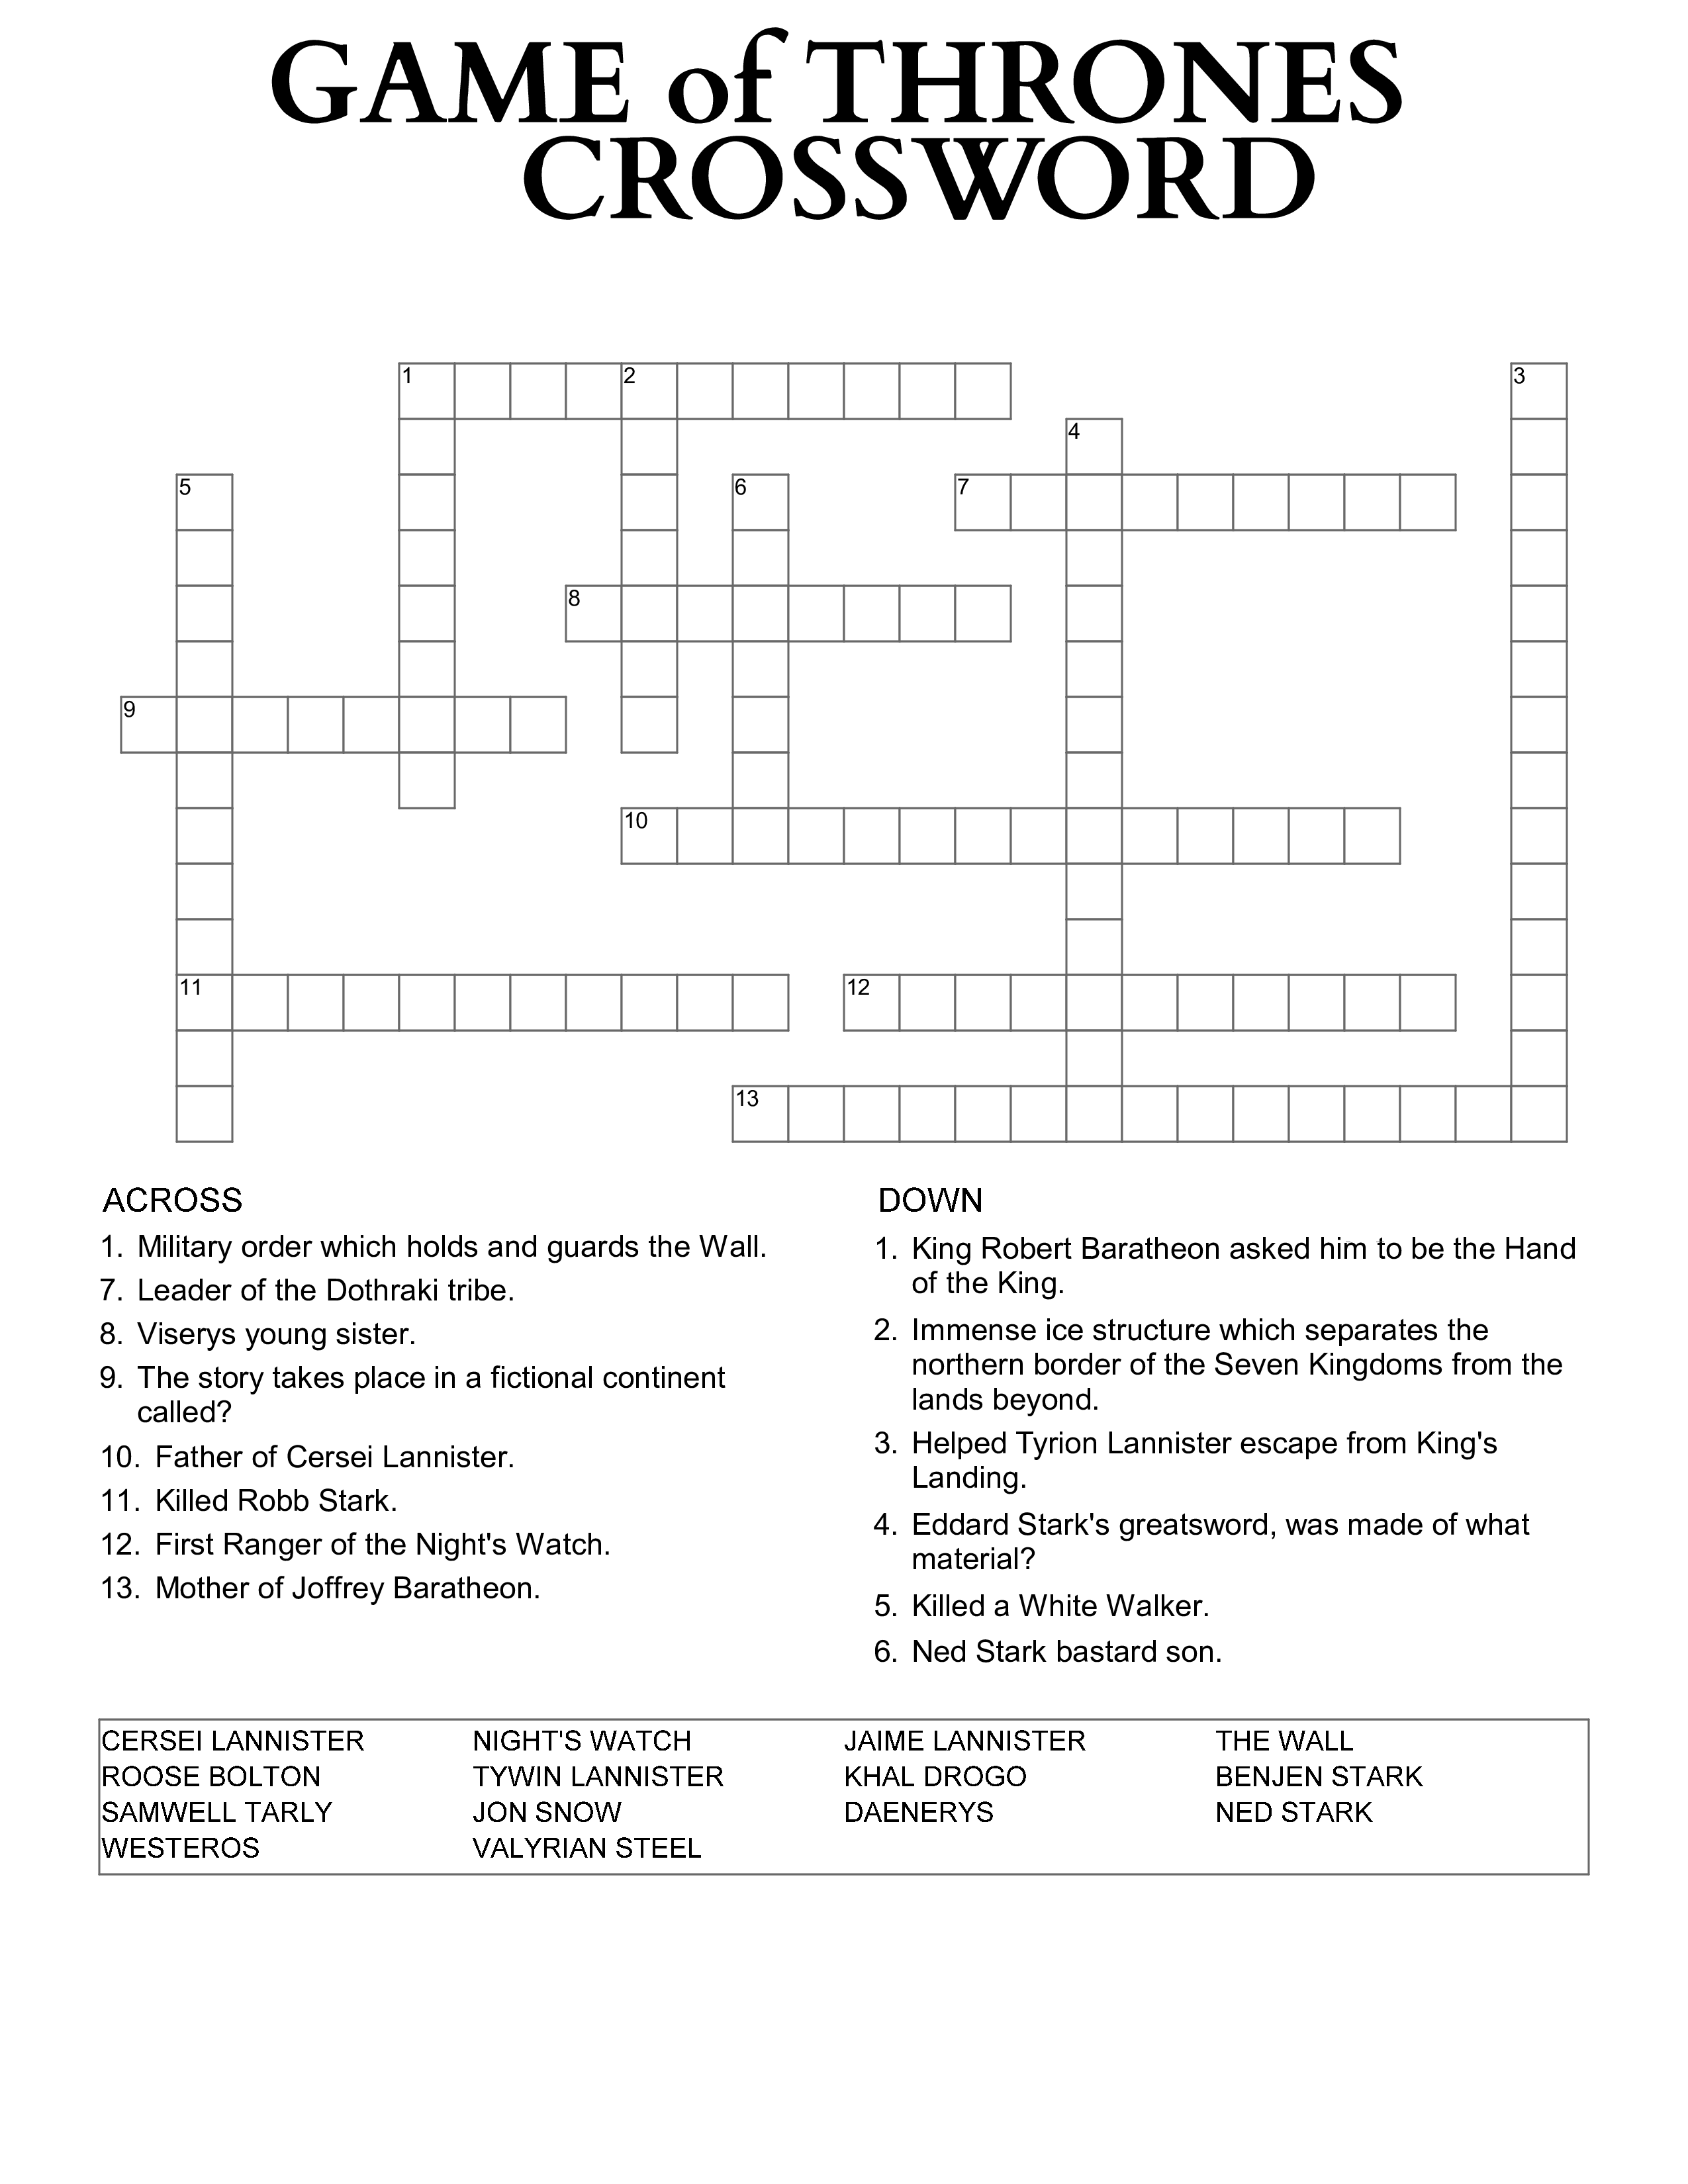 game of thrones crossword plantilla imagen principal